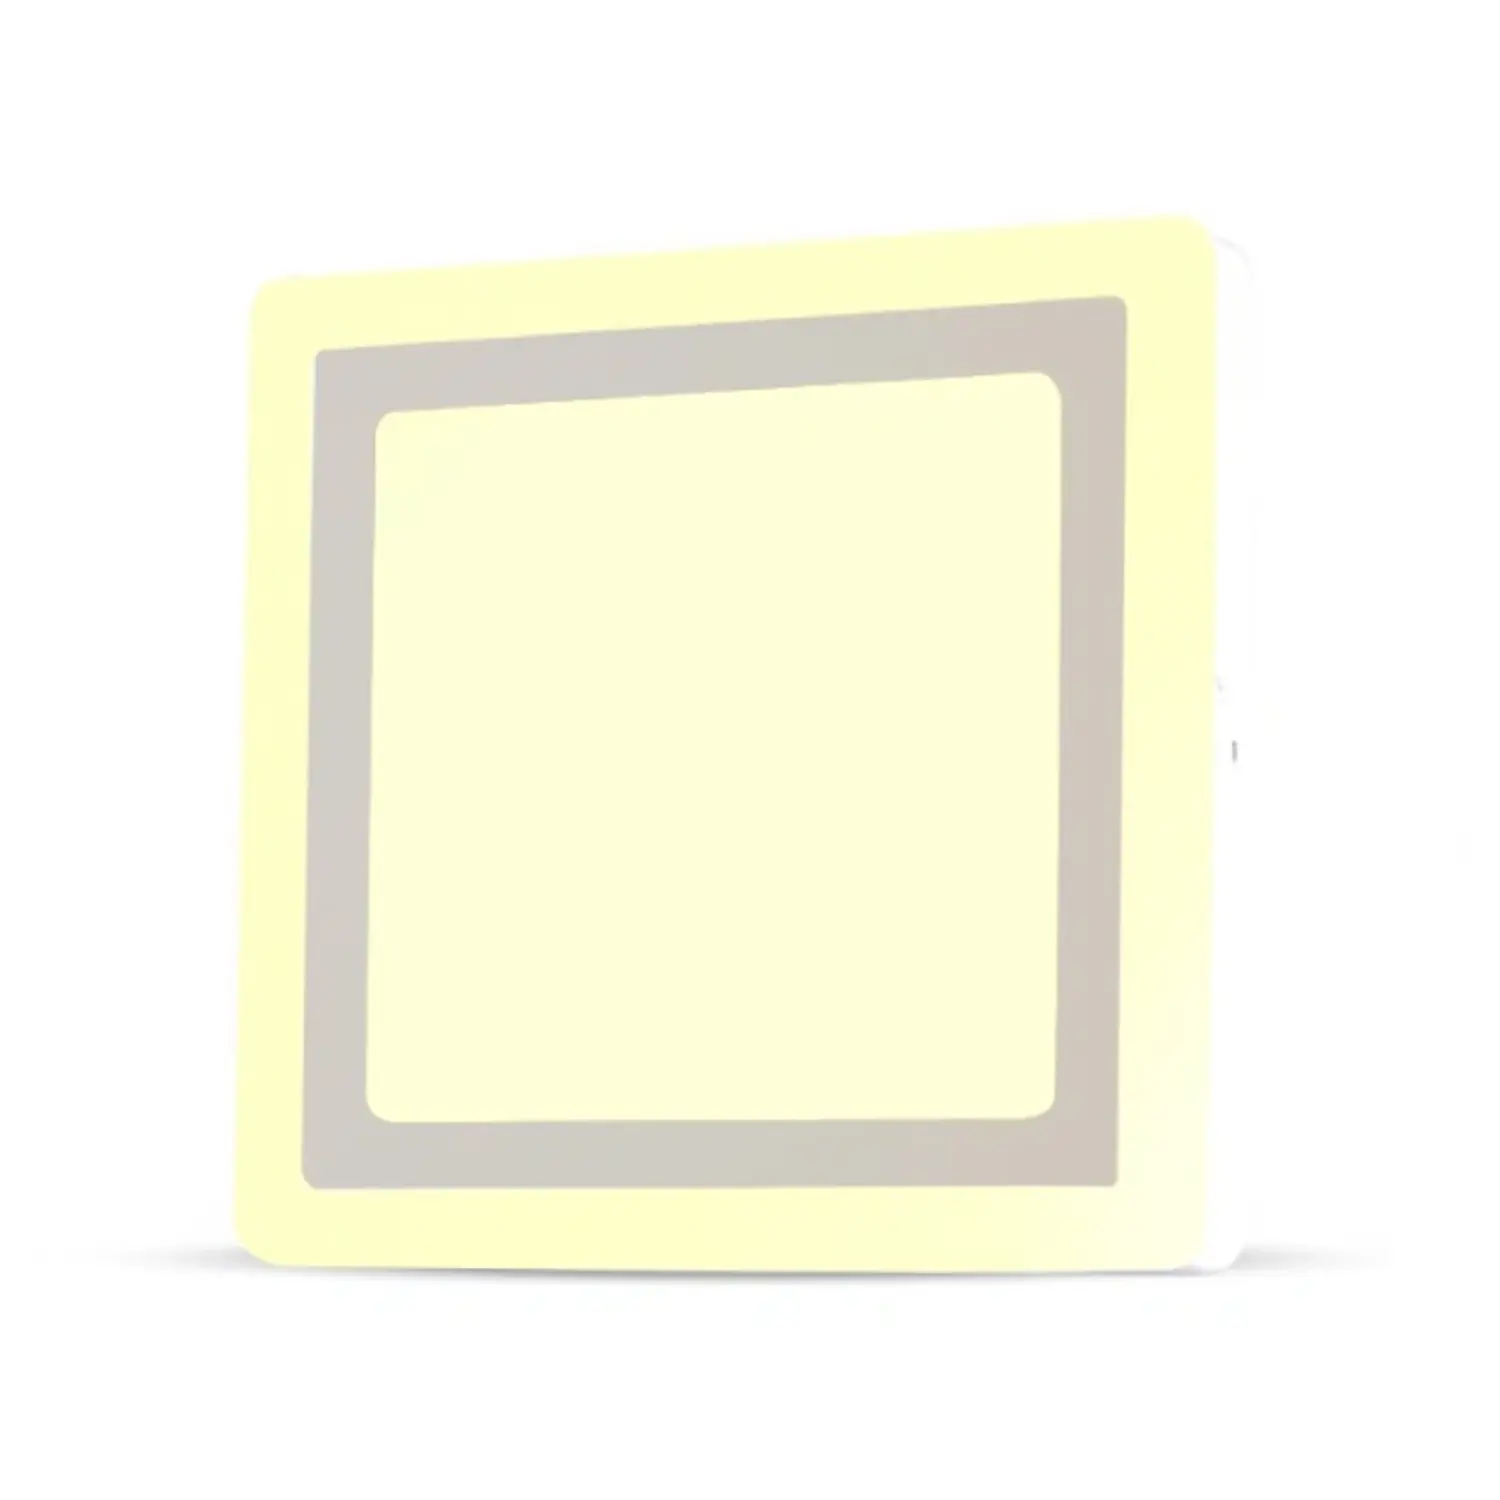 immagine del prodotto pannello luminoso doppia luce led parete 22 watt bianco caldo quadrato